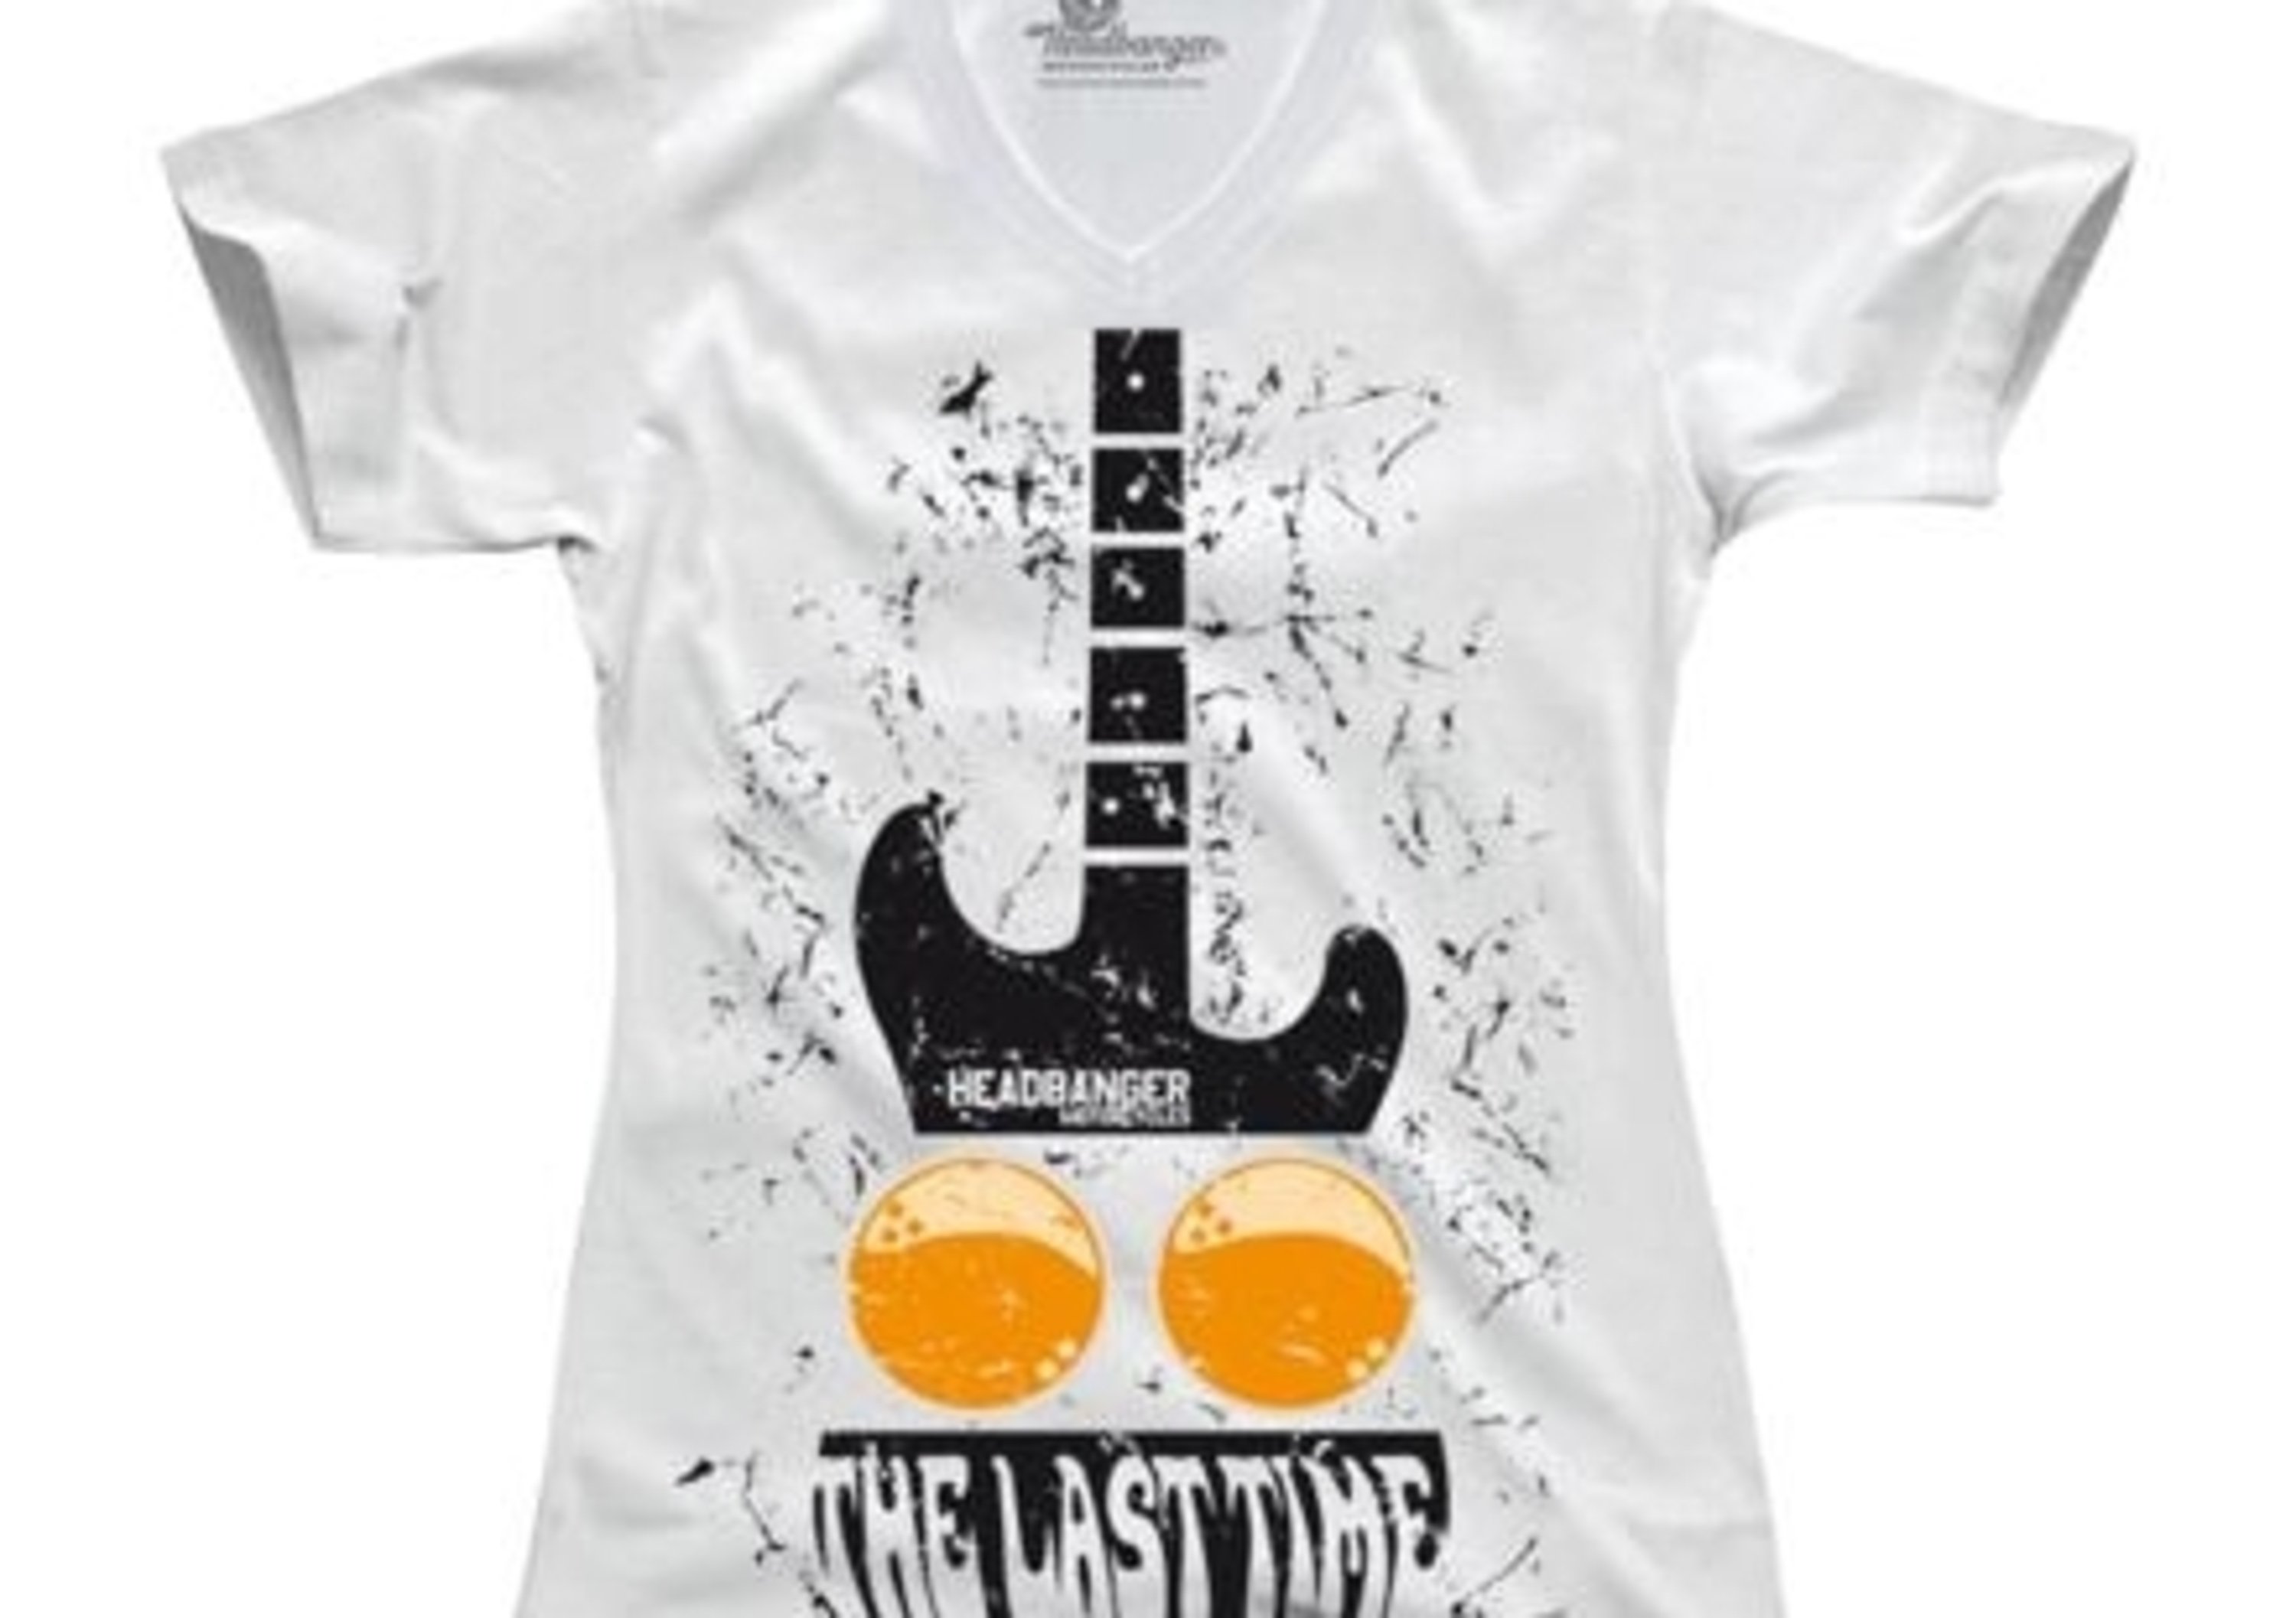 Linea apparel Headbanger 2012: occasioni sul sito e in showroom